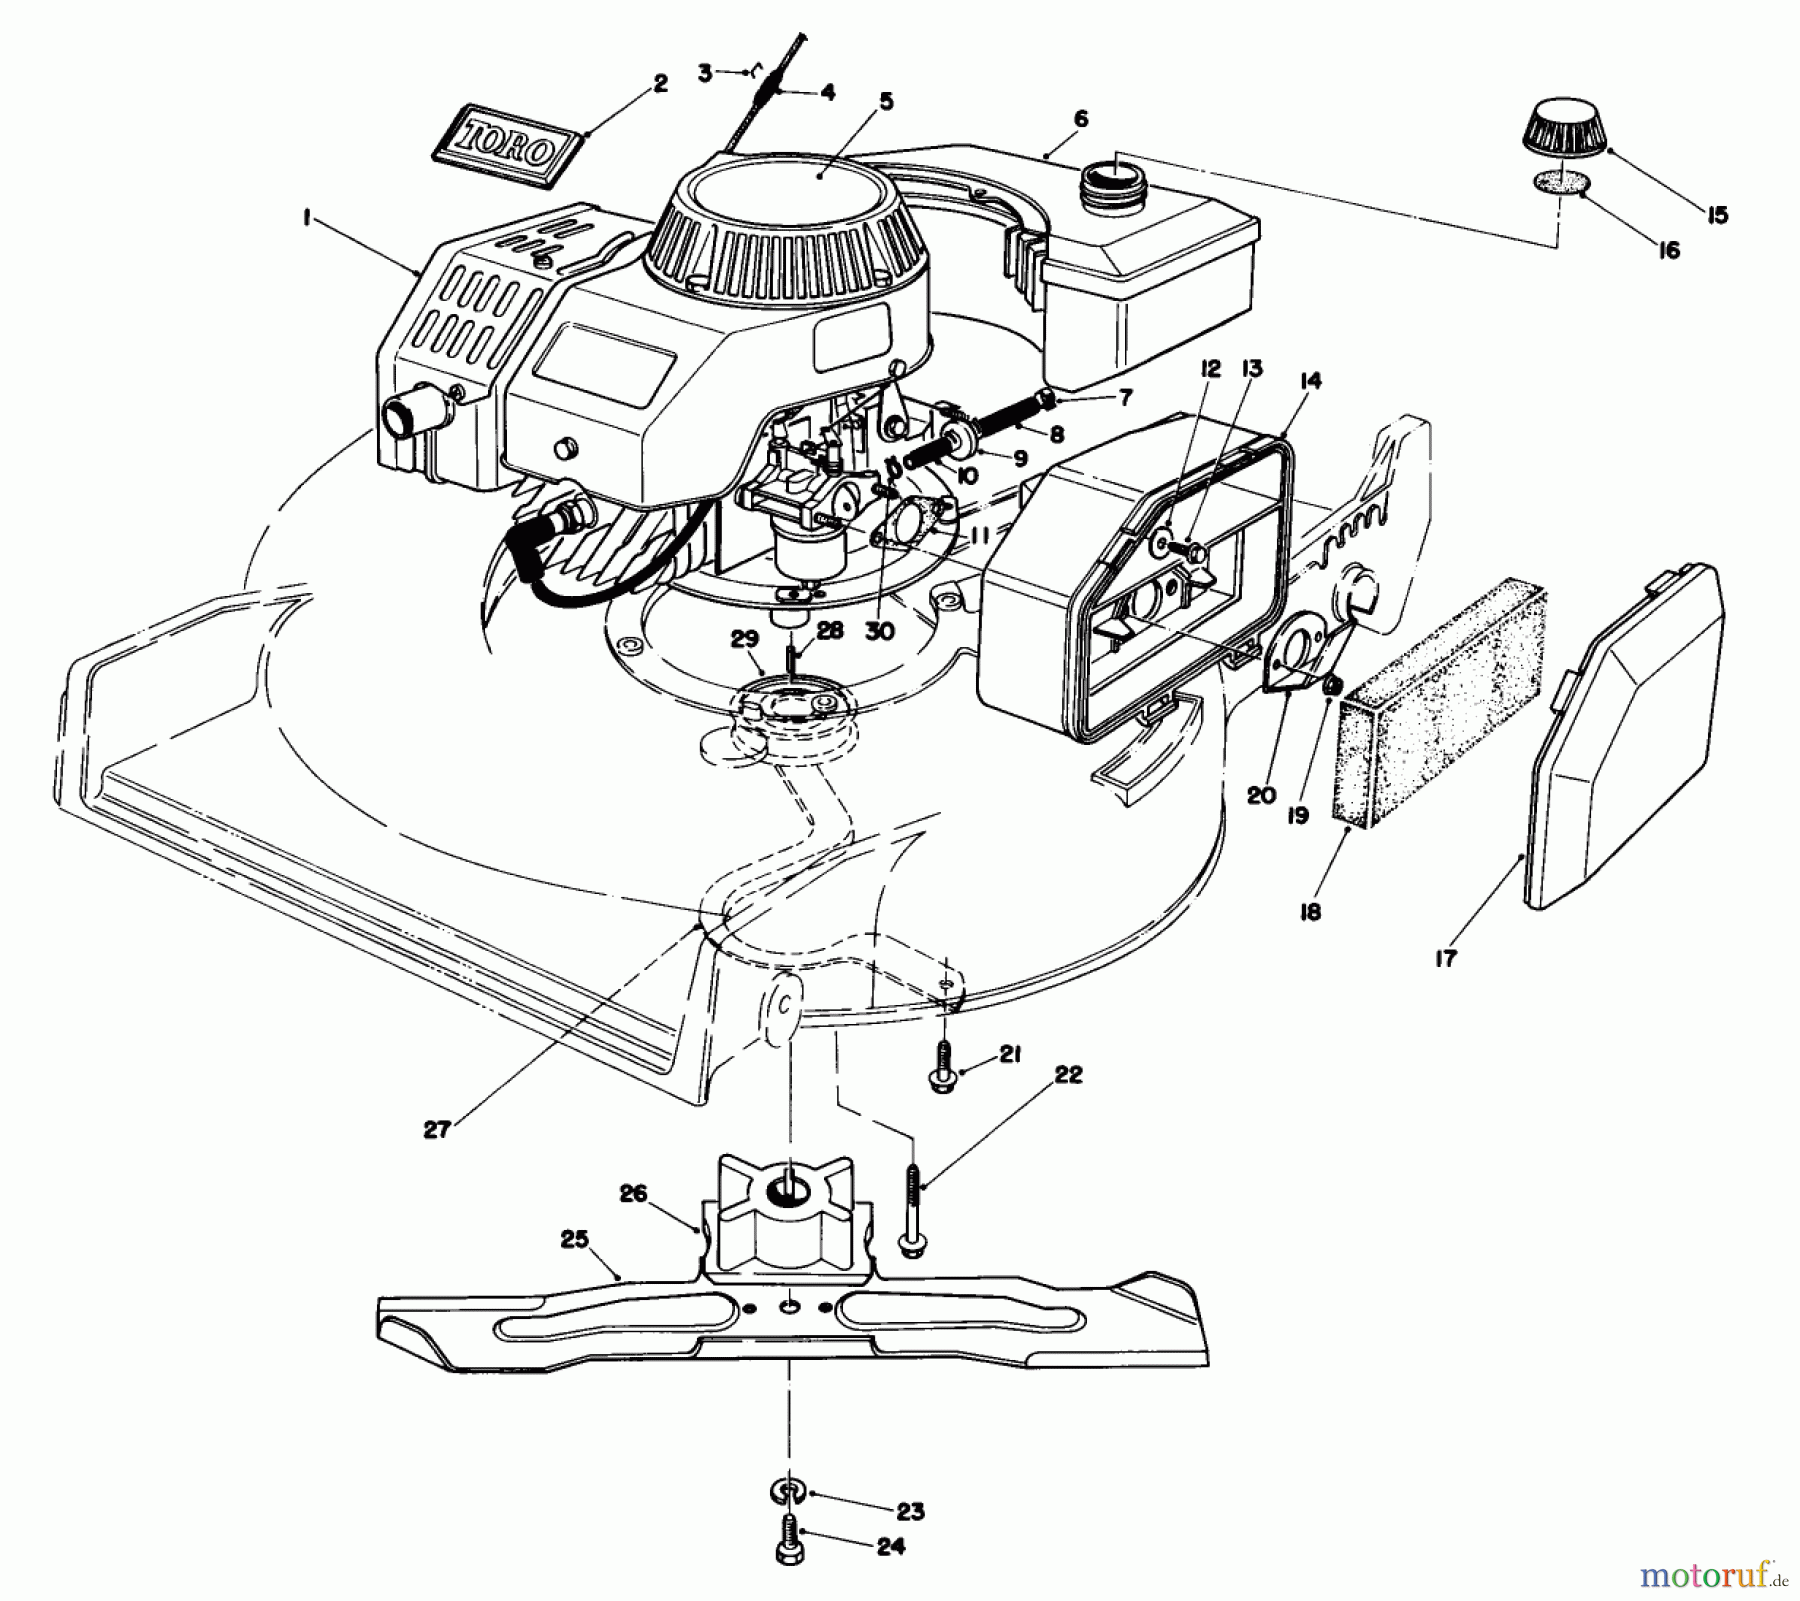  Toro Neu Mowers, Walk-Behind Seite 1 20680 - Toro Lawnmower, 1986 (6000001-6999999) ENGINE ASSEMBLY